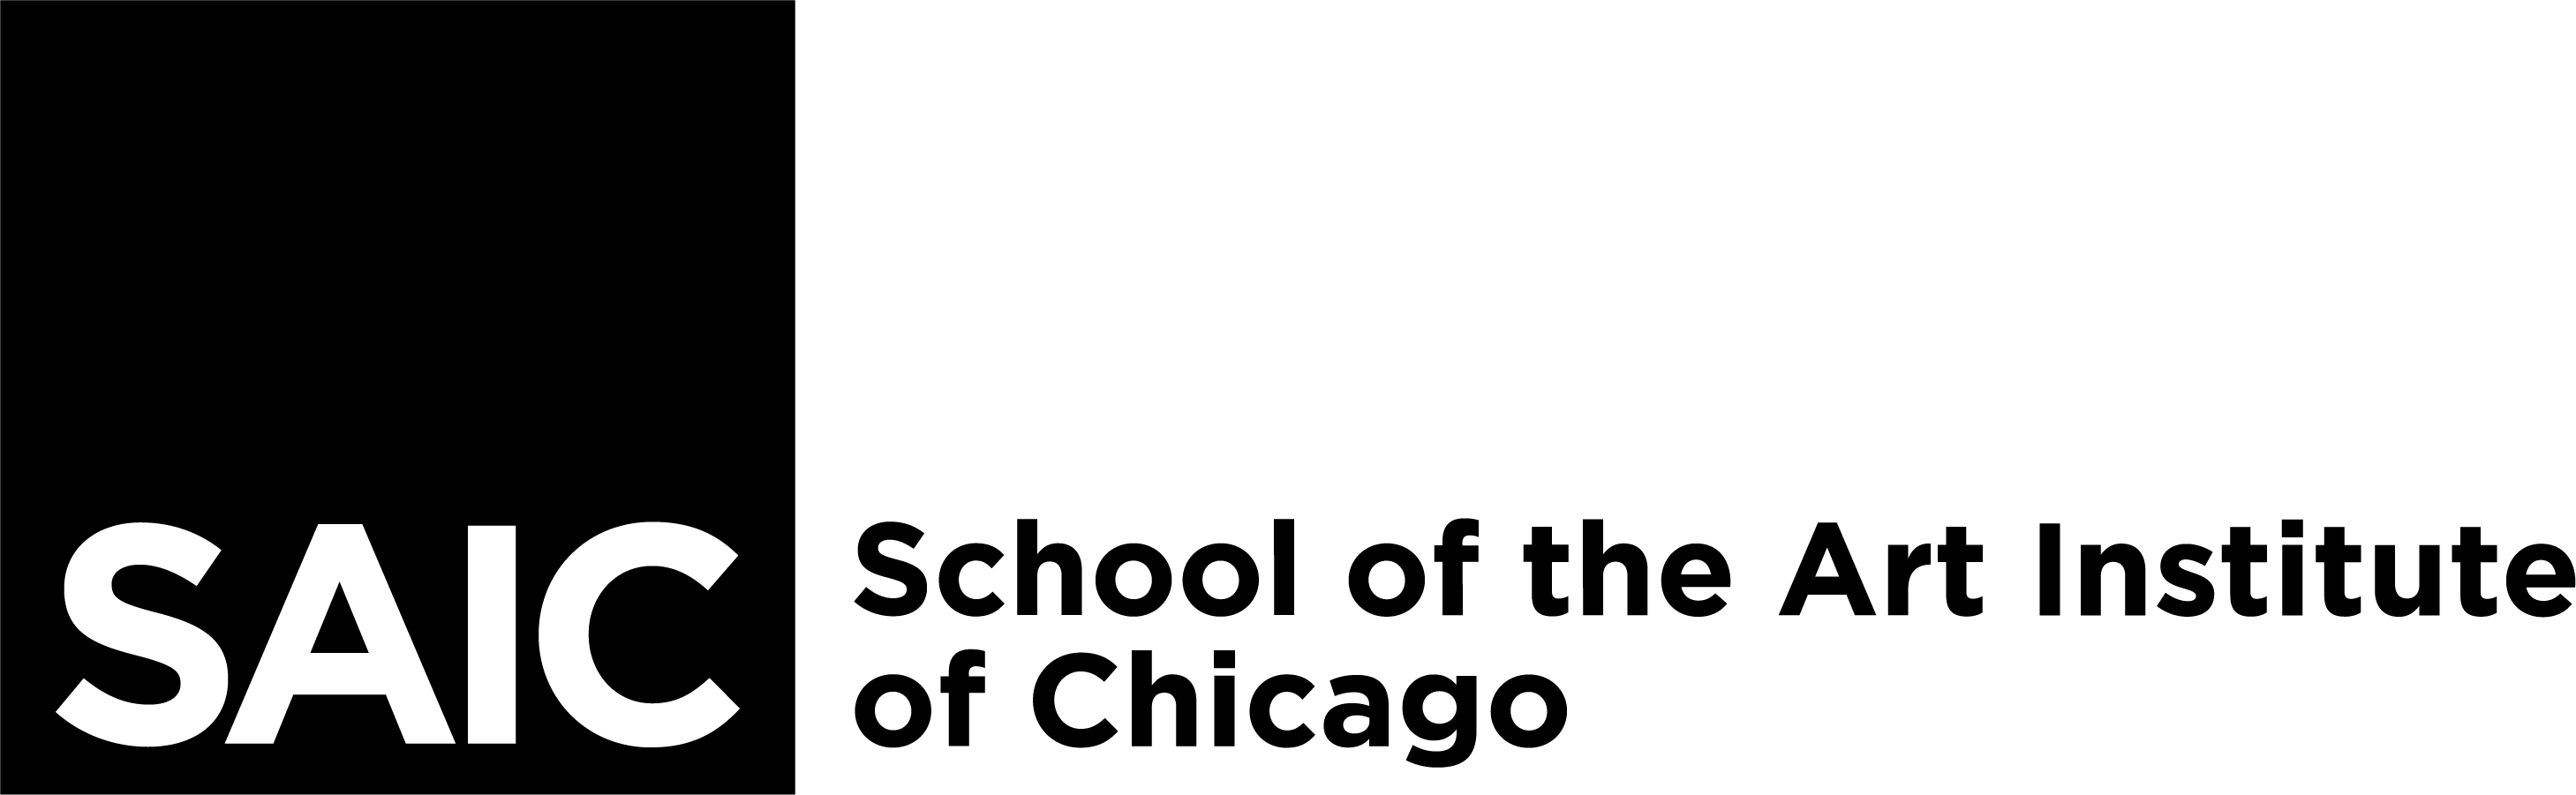 SAIC Logo - SAIC - School of the Art Institute of Chicago